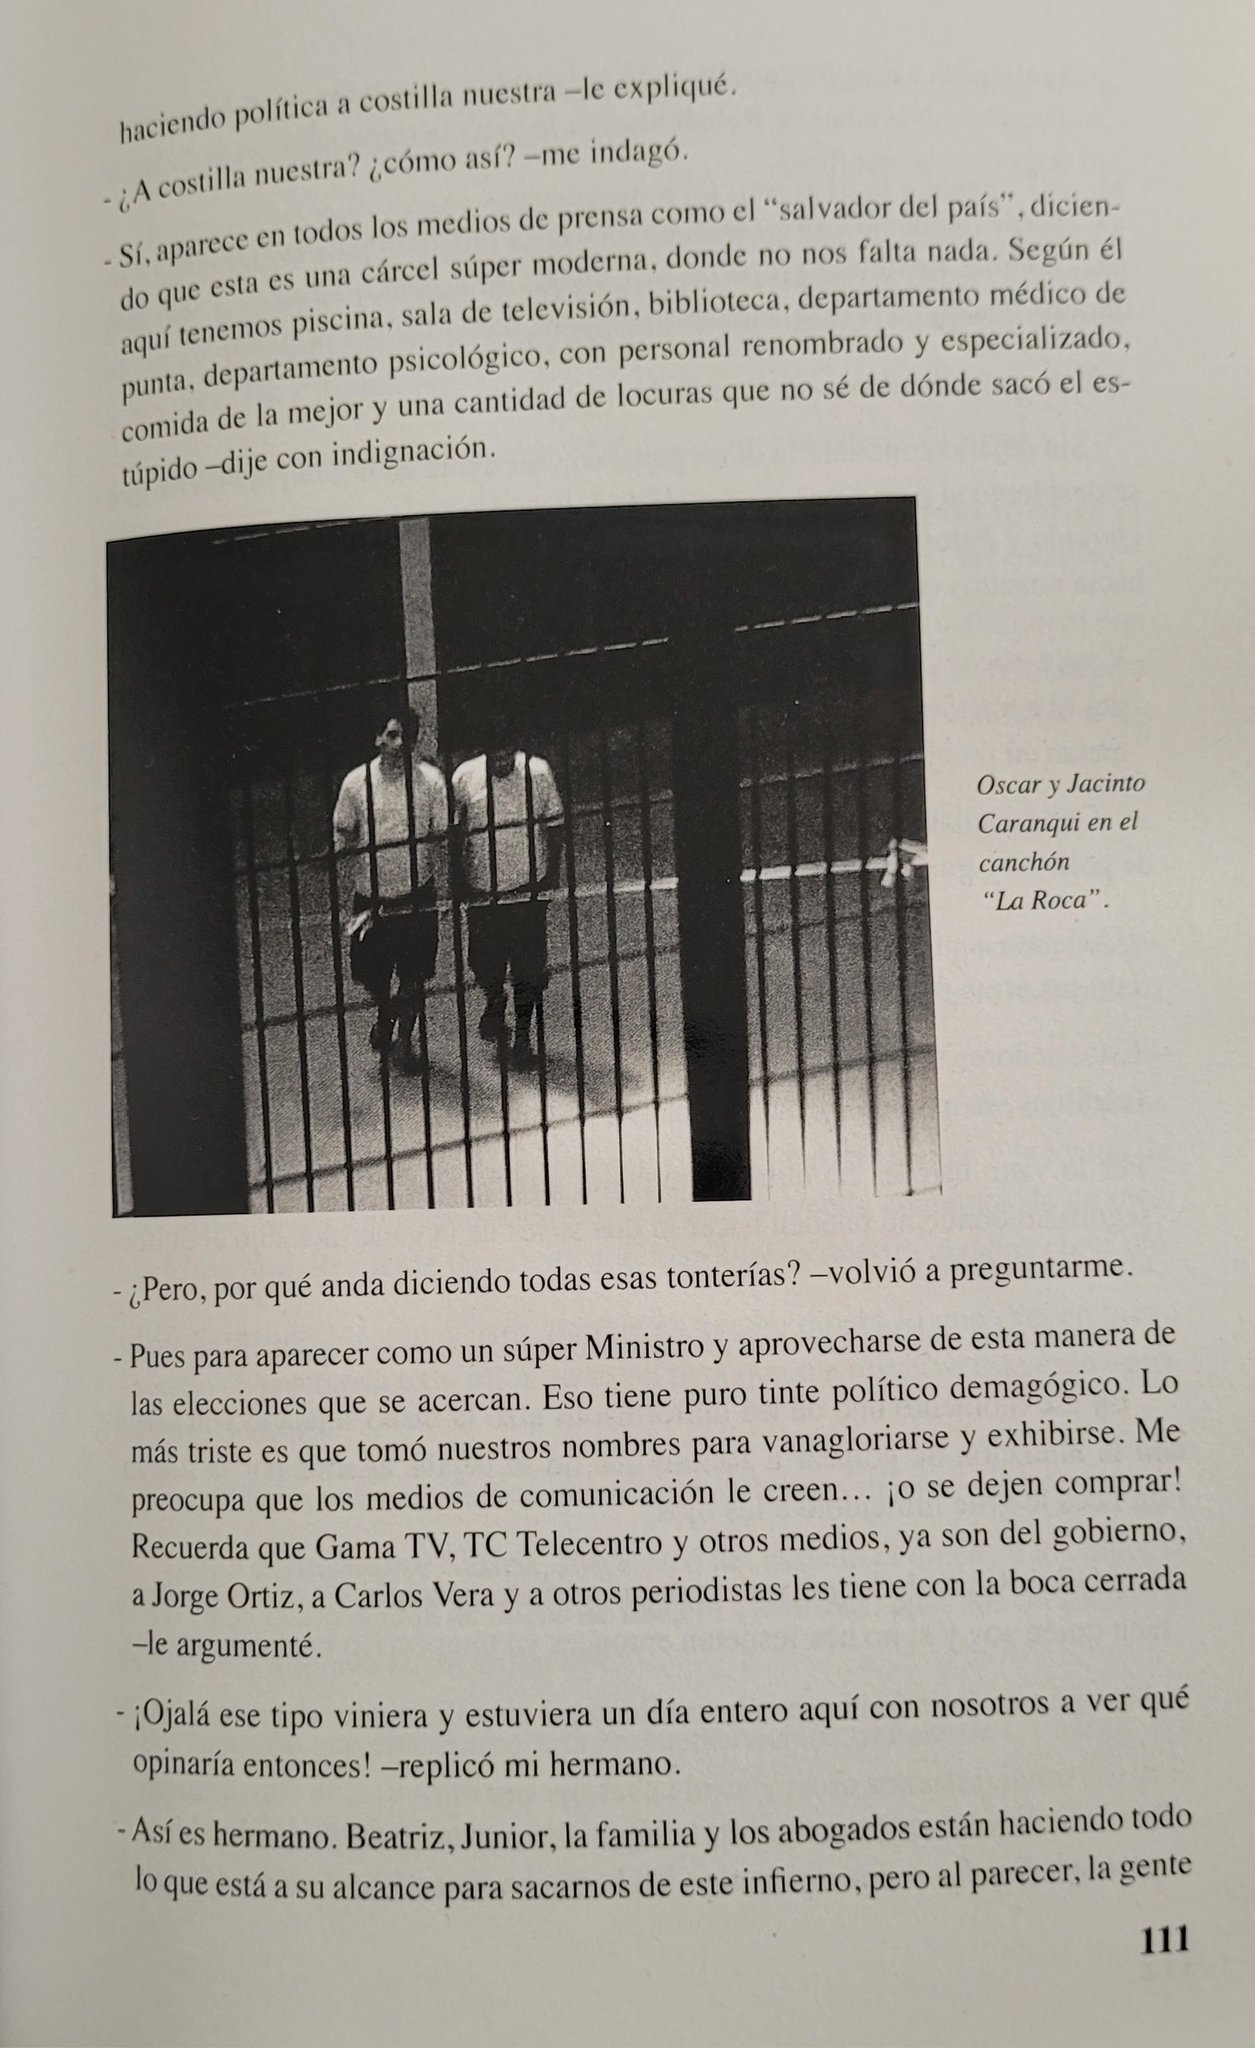 Página 111 del libro de Óscar Caranqui donde revela que el ministro de Justicia no decía la verdad sobre las condiciones de los presos en la cárcel La Roca. (Narcos Ecuador).